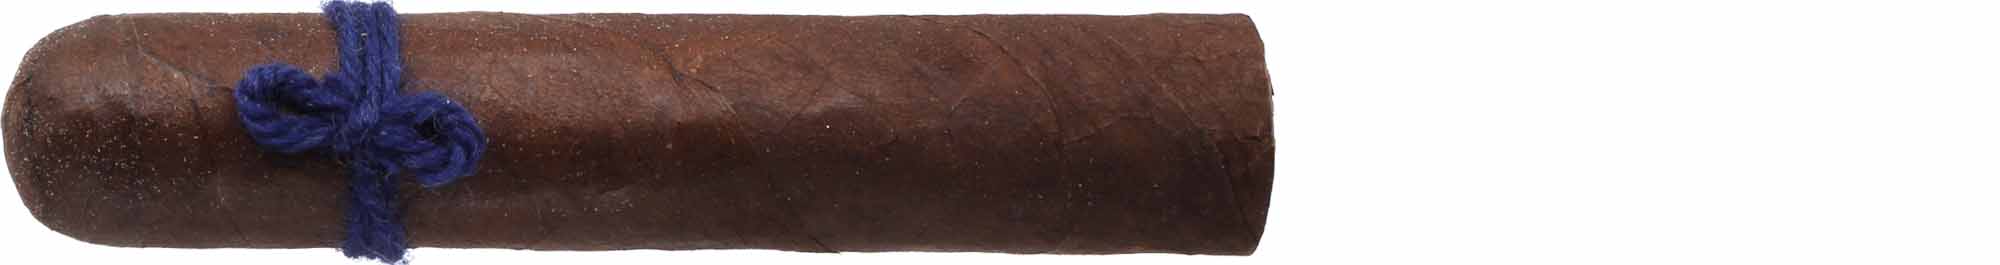 Furia Zigarren Alecto (blauer Faden)